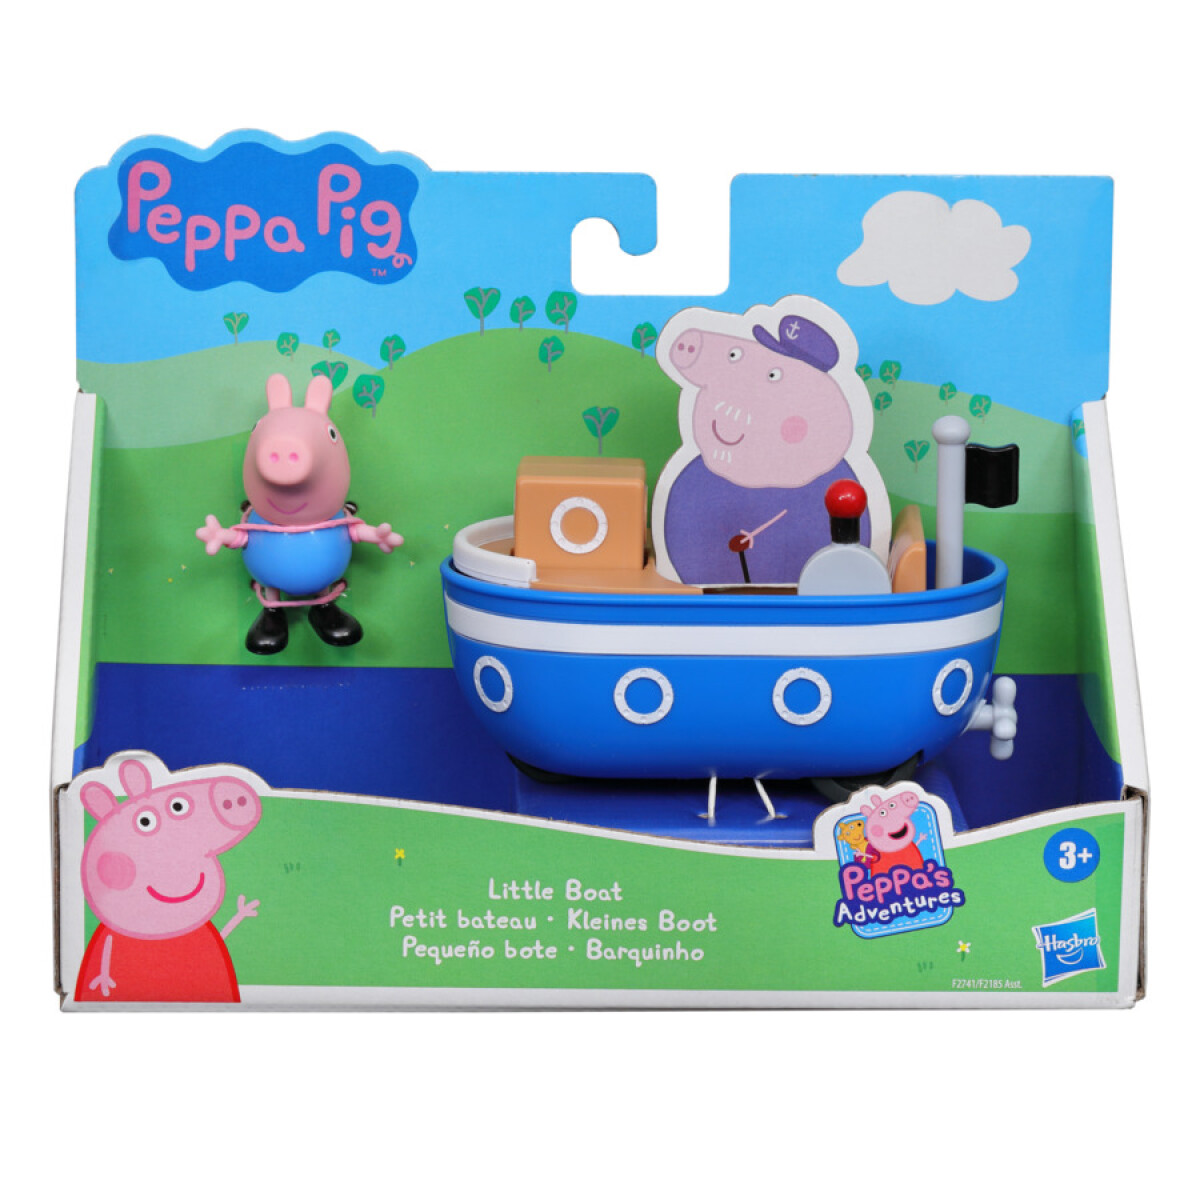 Figura George Peppa Pig y Pequeño Bote Peppa's Adventures - 001 